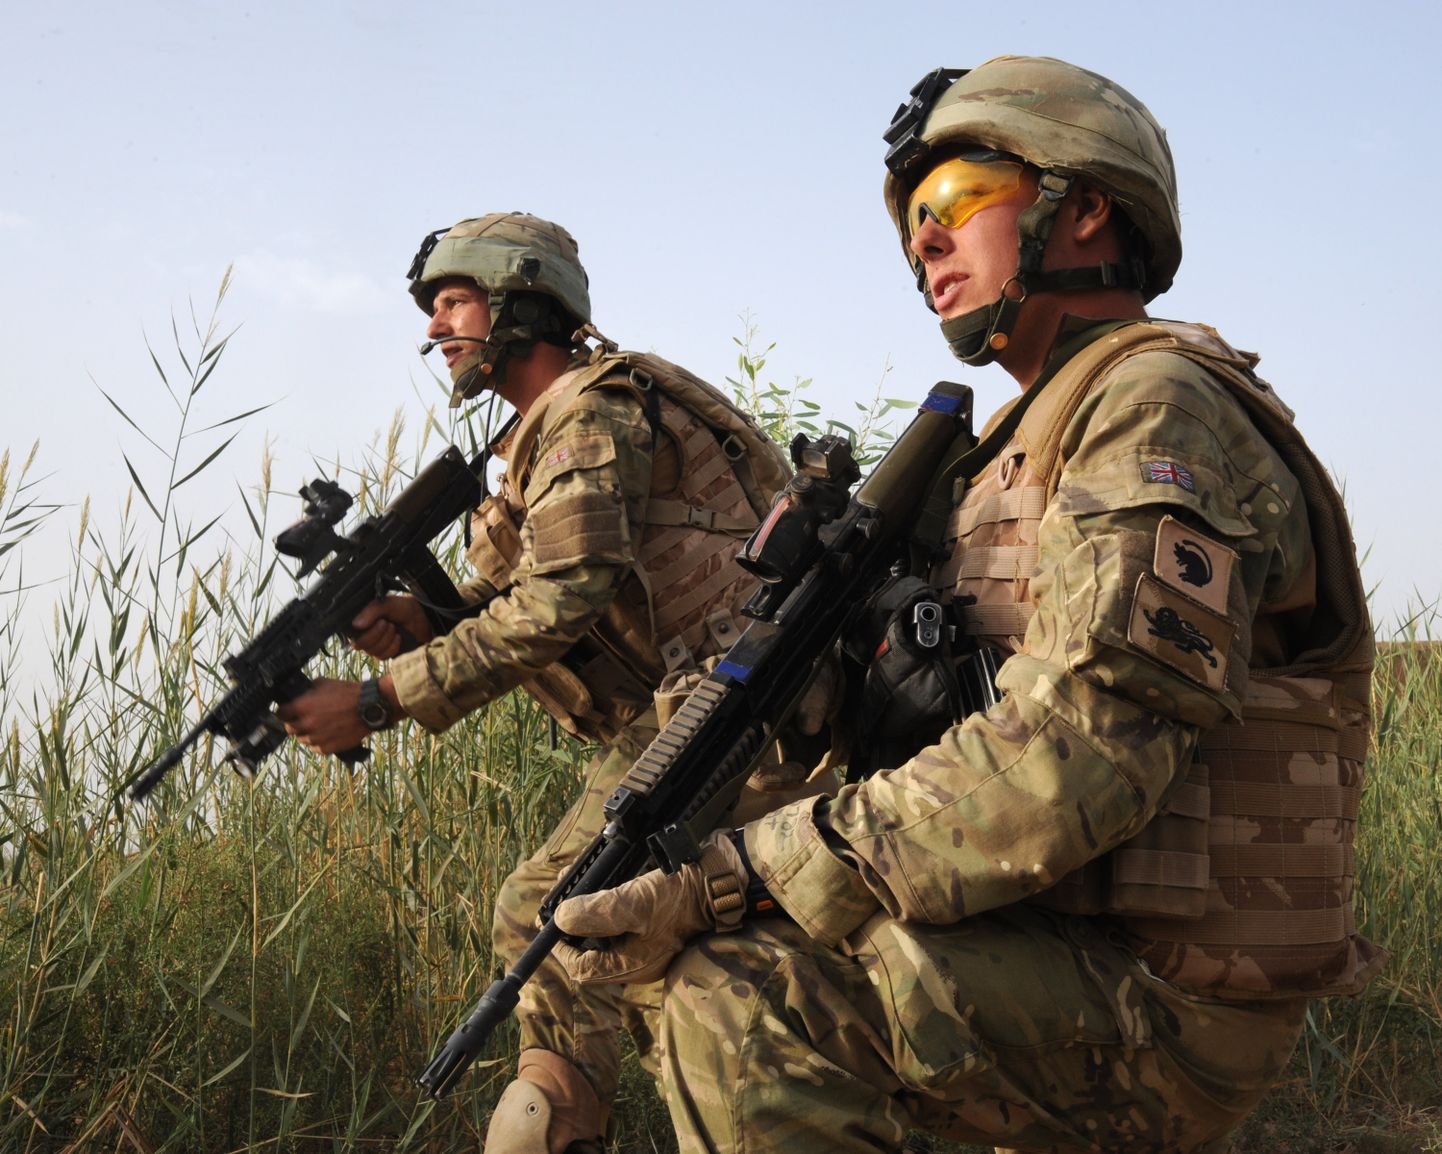 Briti sõdurid 2010. aastal.